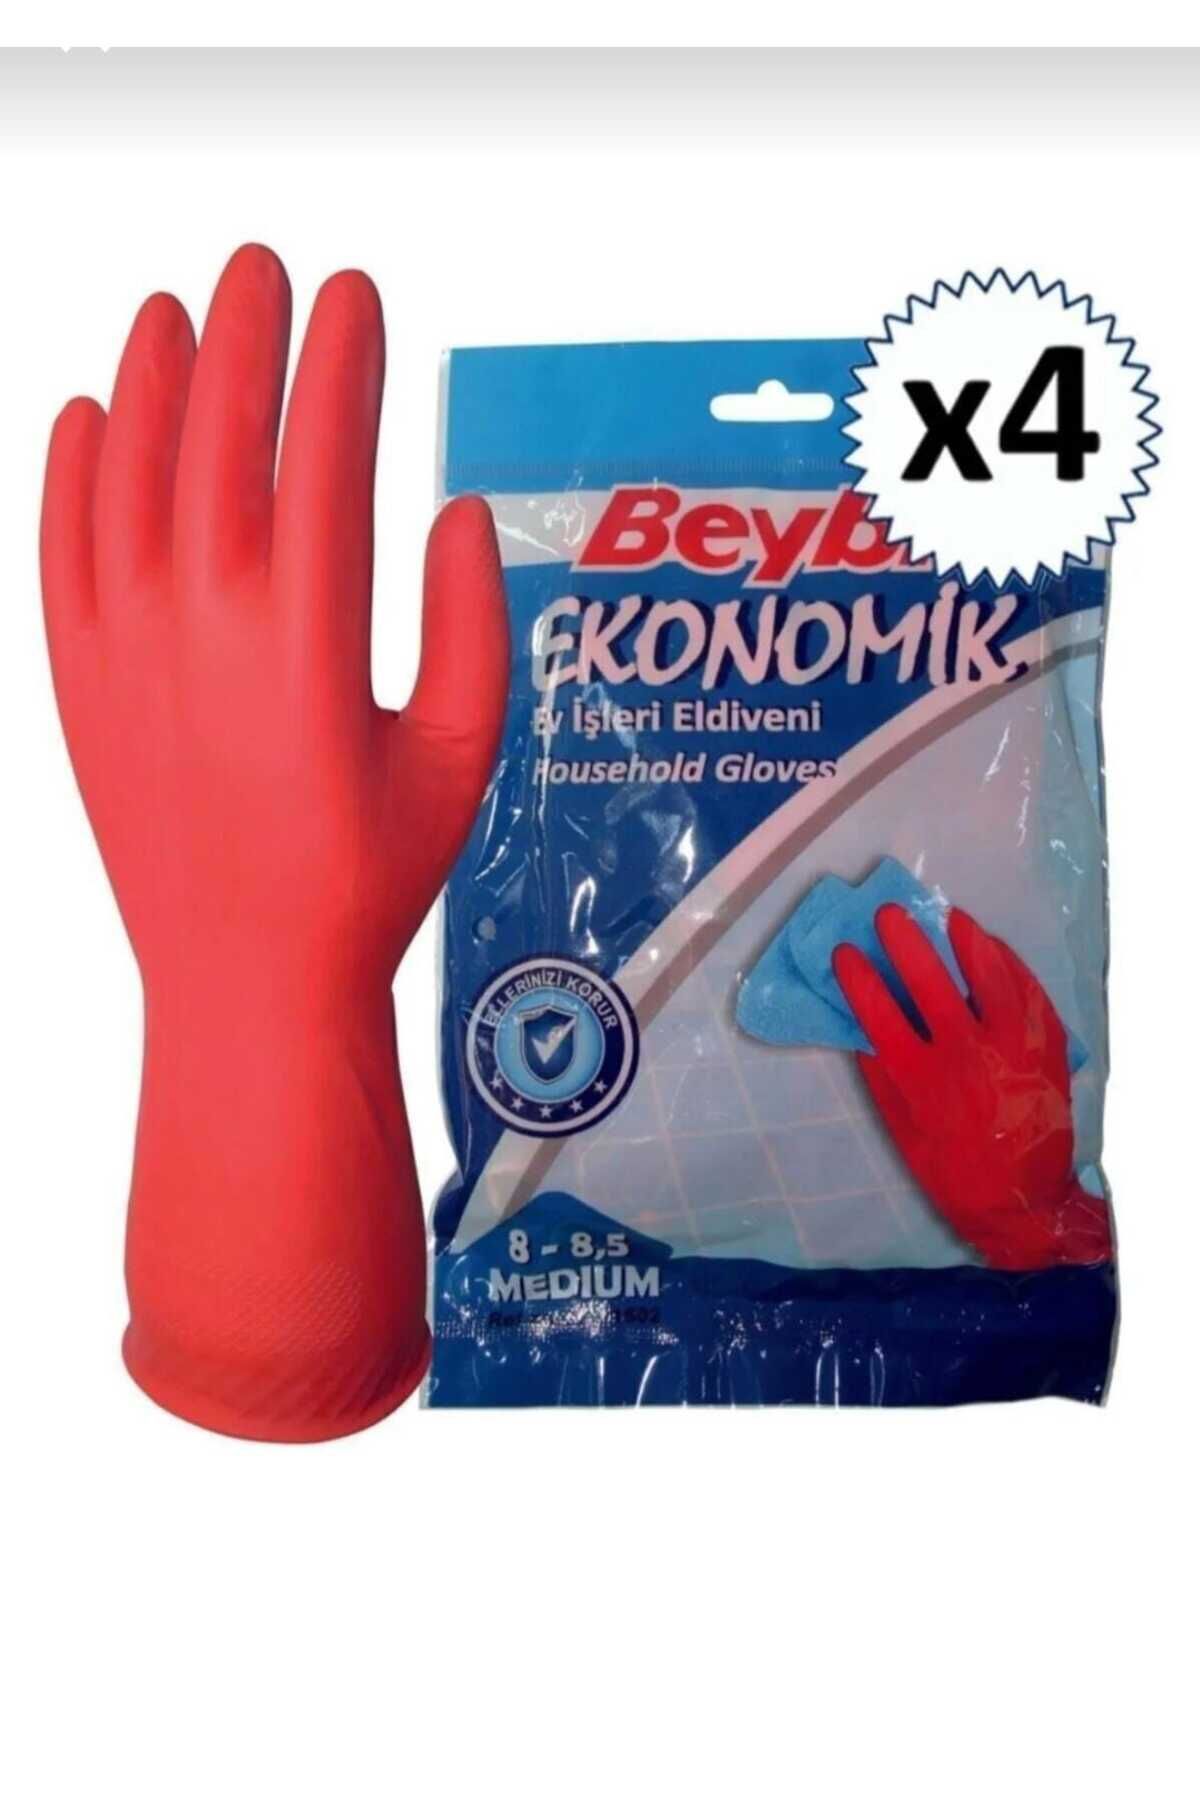 BEYBİ bulaşık eldiveni medium 8-8.4 (4 çift)